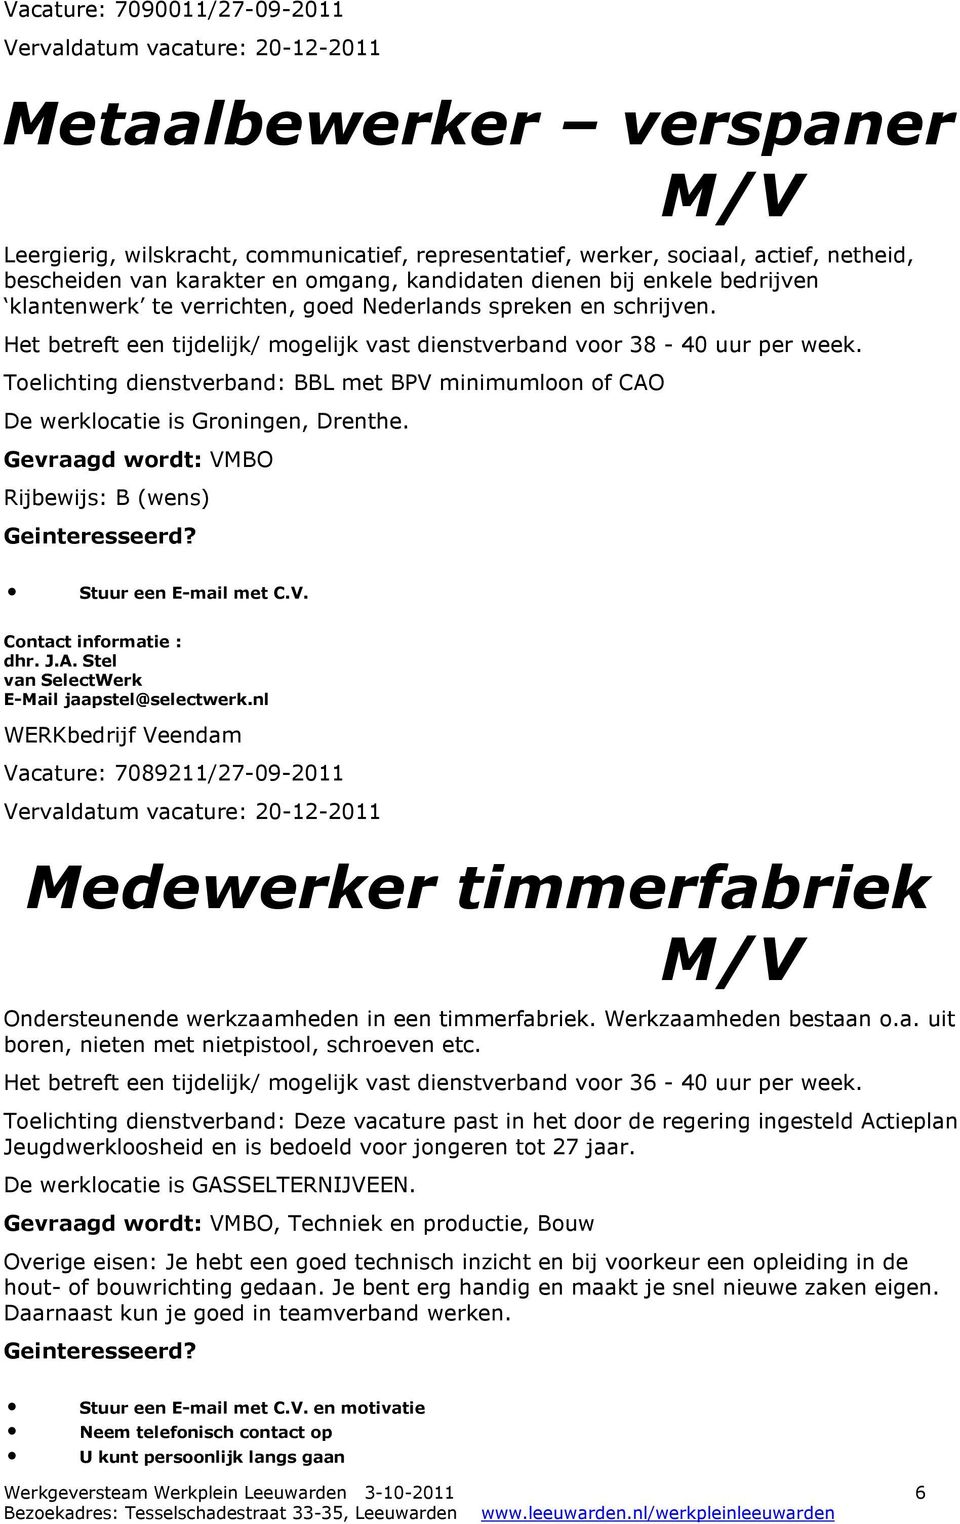 Toelichting dienstverband: BBL met BPV minimumloon of CAO De werklocatie is Groningen, Drenthe. Gevraagd wordt: VMBO Rijbewijs: B (wens) Stuur een E-mail met C.V. dhr. J.A. Stel van SelectWerk E-Mail jaapstel@selectwerk.